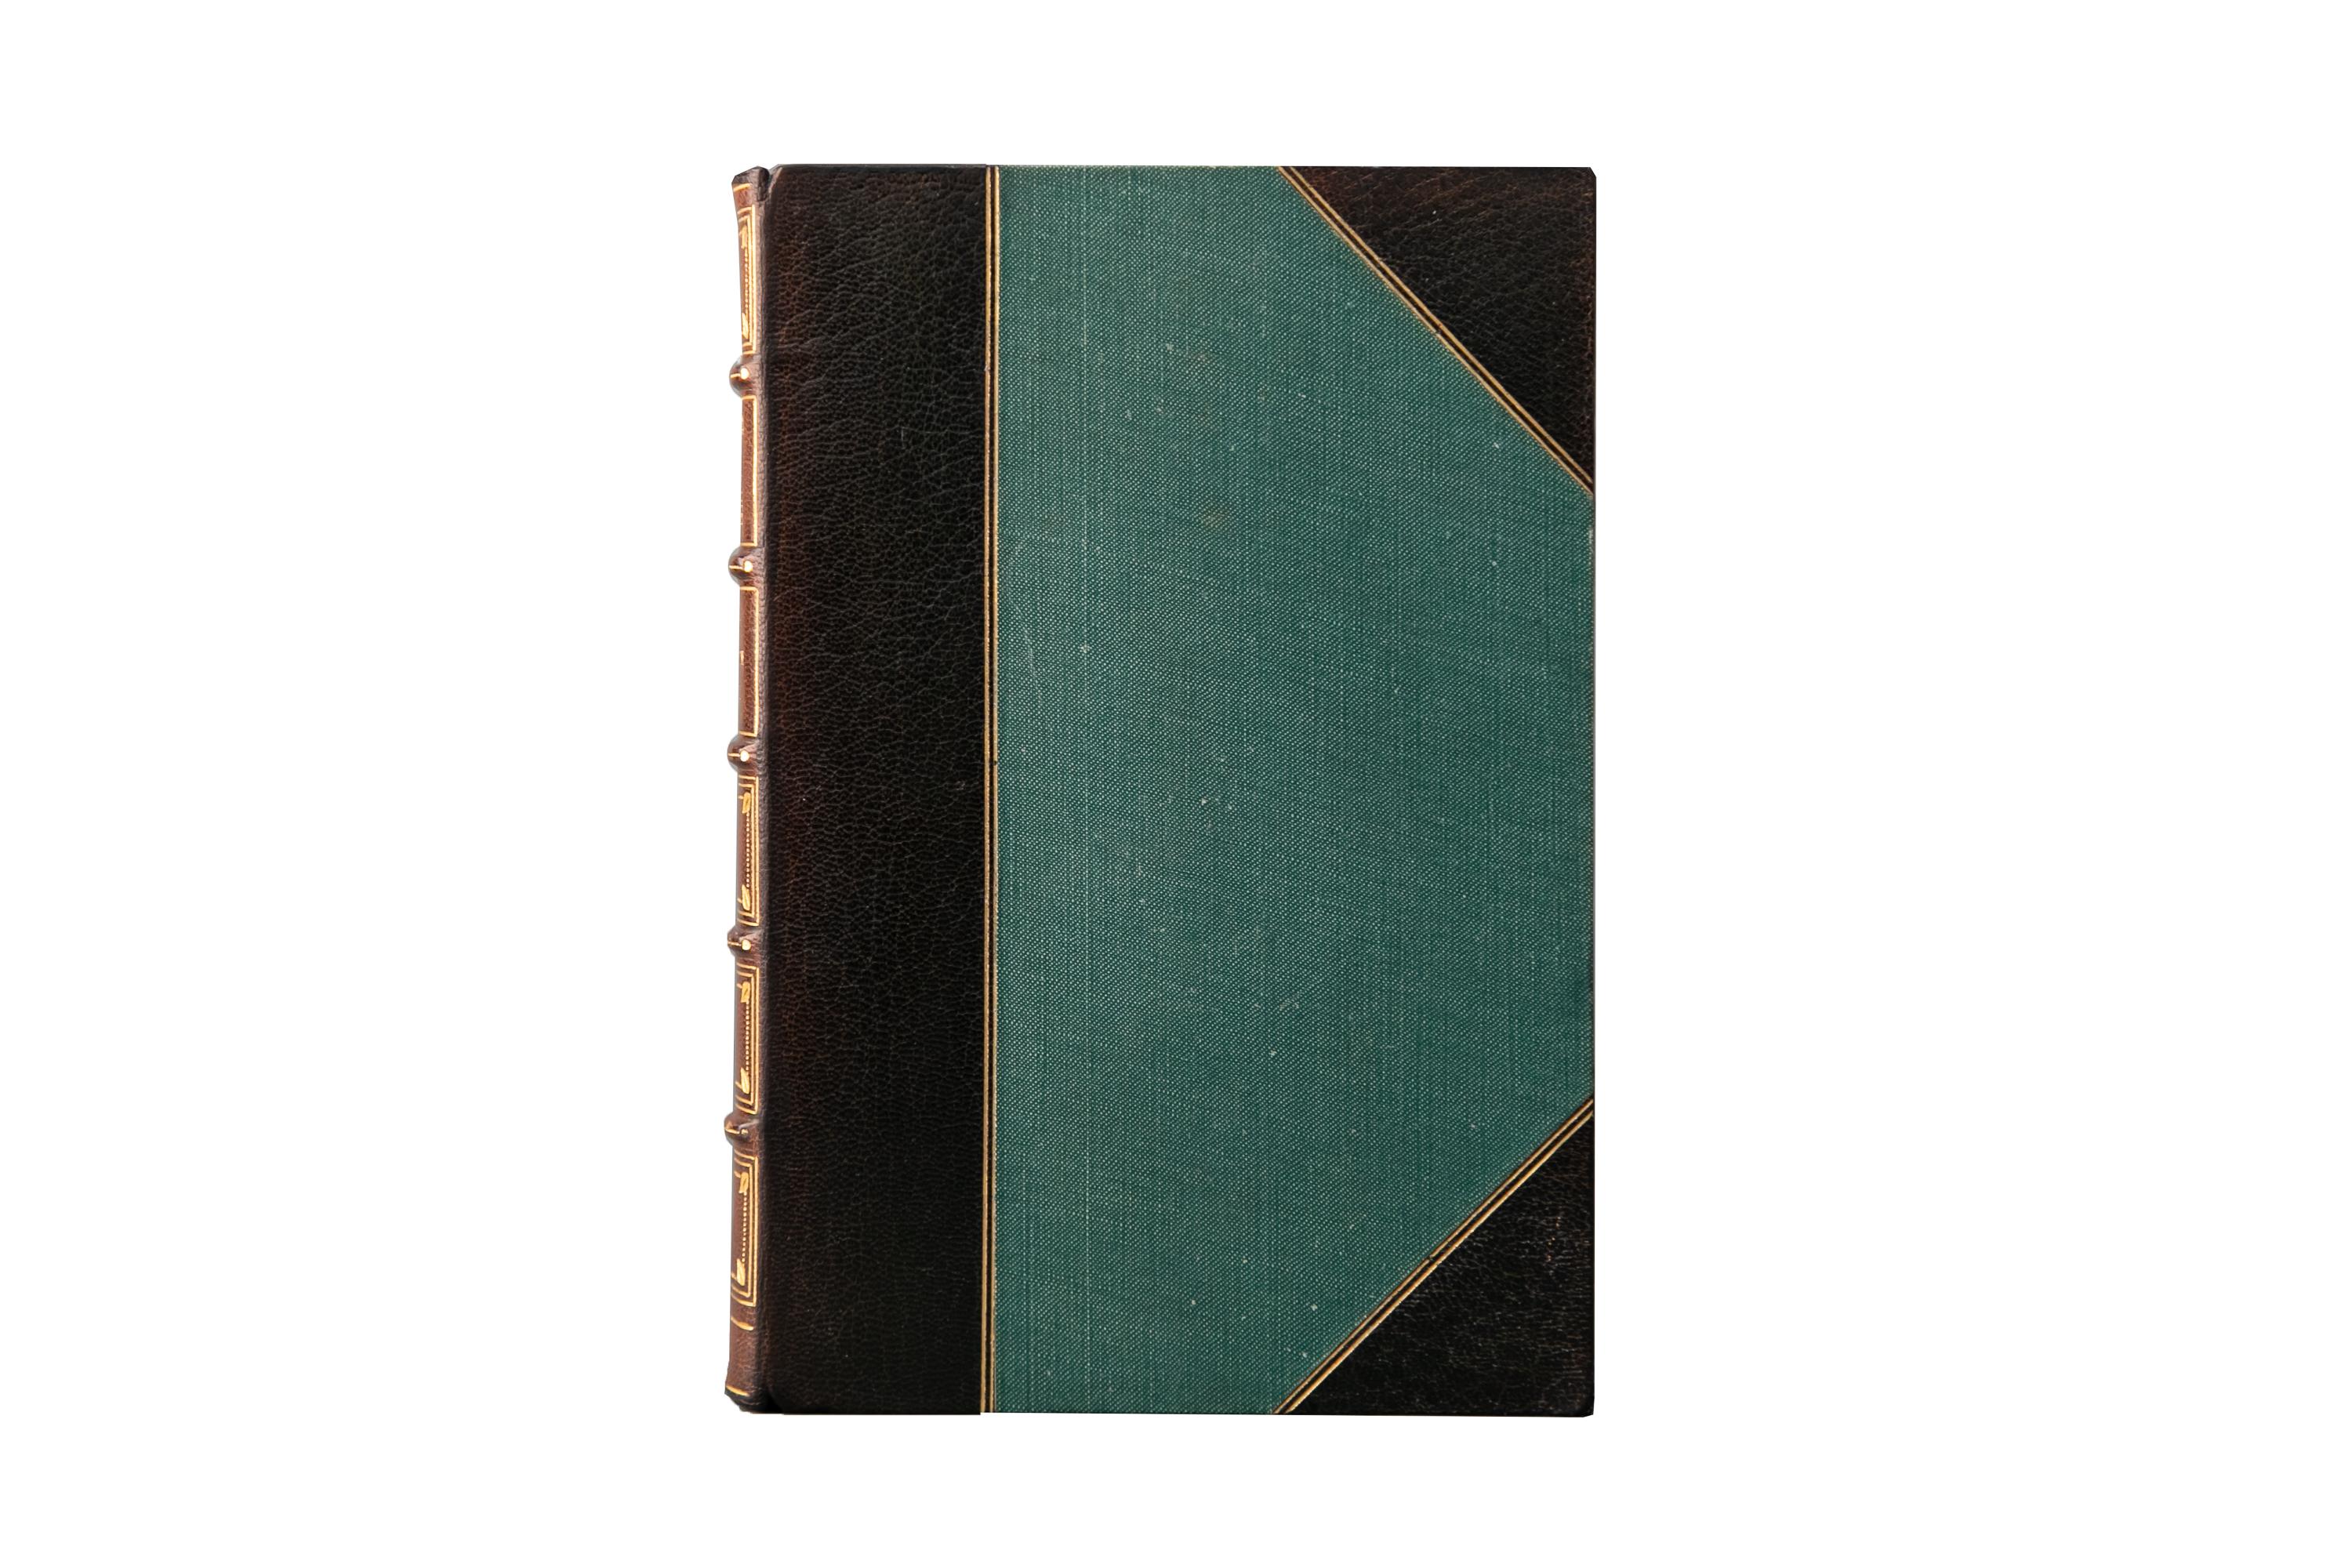 12 Bände. The Brontë Sisters, Romane. Ausgabe Thornton. Gebunden von Root & Son in 3/4 lohfarbenen Marokko und Leinenplatten, doppelt eingefasst in Goldprägung. Die Wirbelsäulen sind braun verblasst und zeigen erhöhte Bänder, Label-Beschriftung,